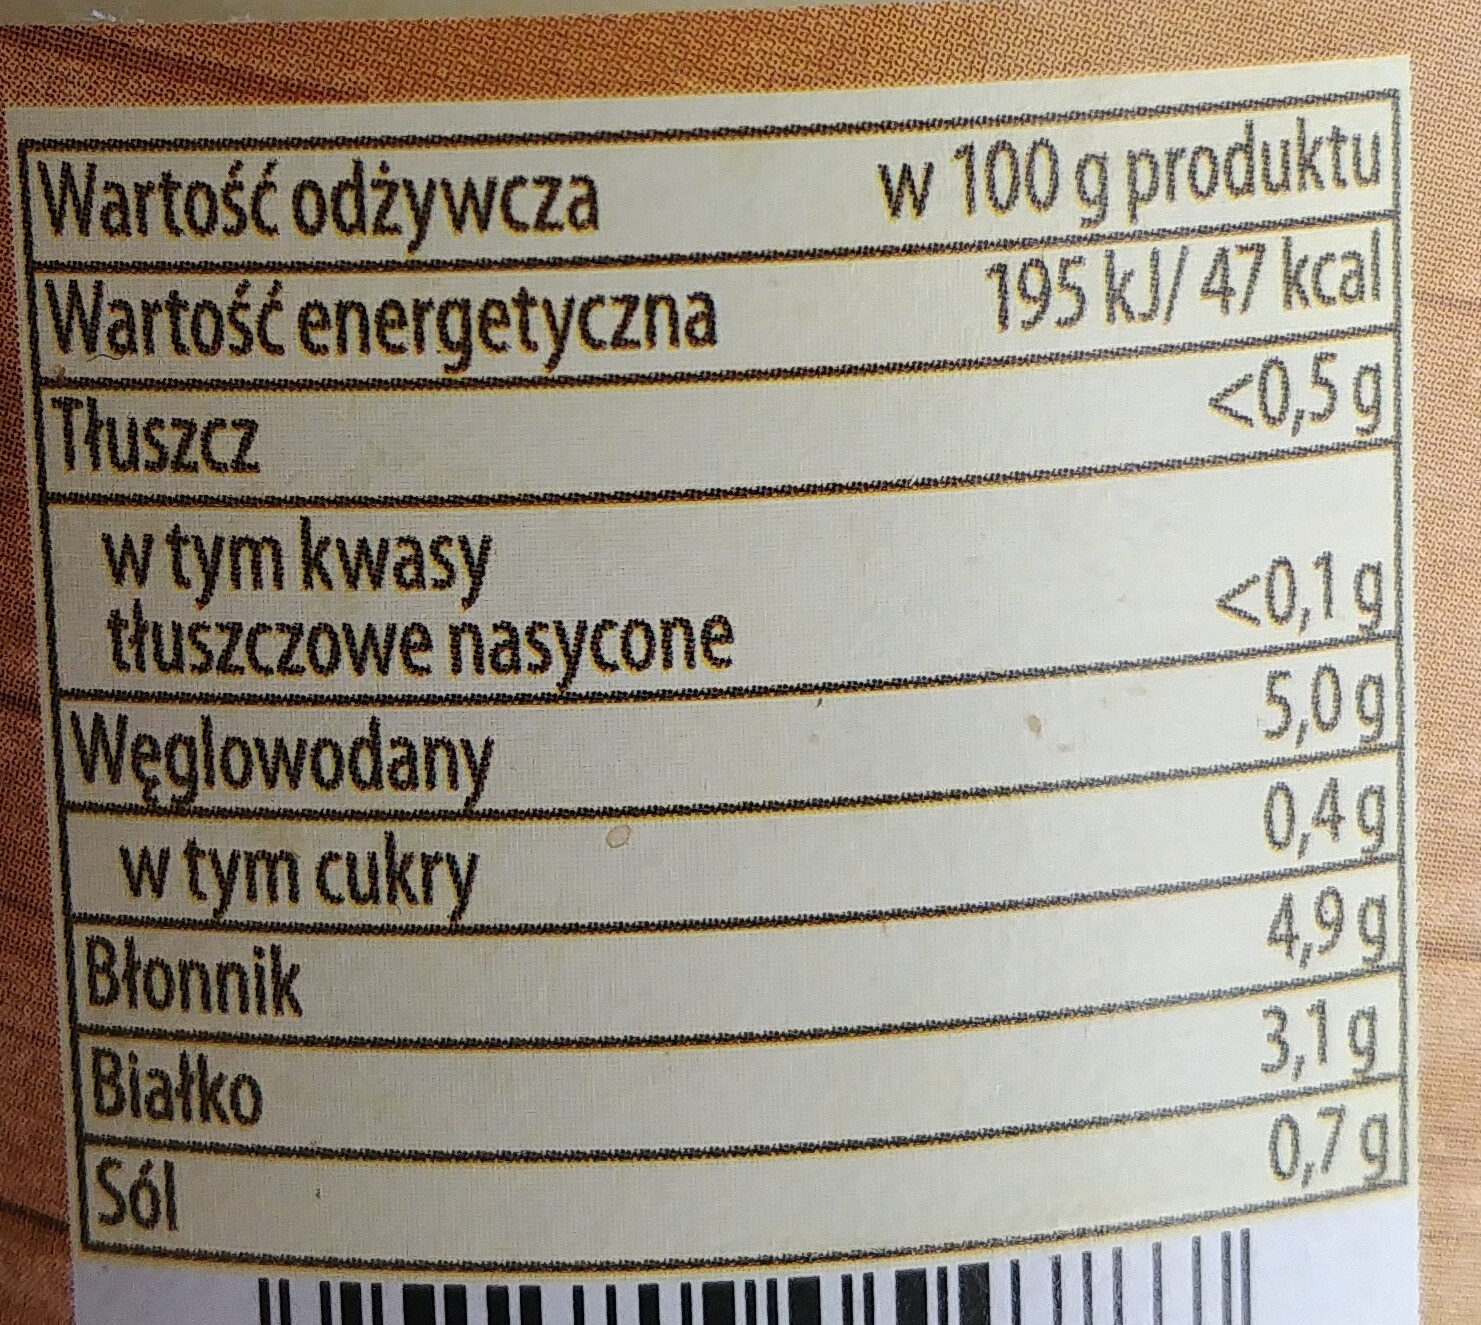 Marchewka z groszkiem - Nutrition facts - pl